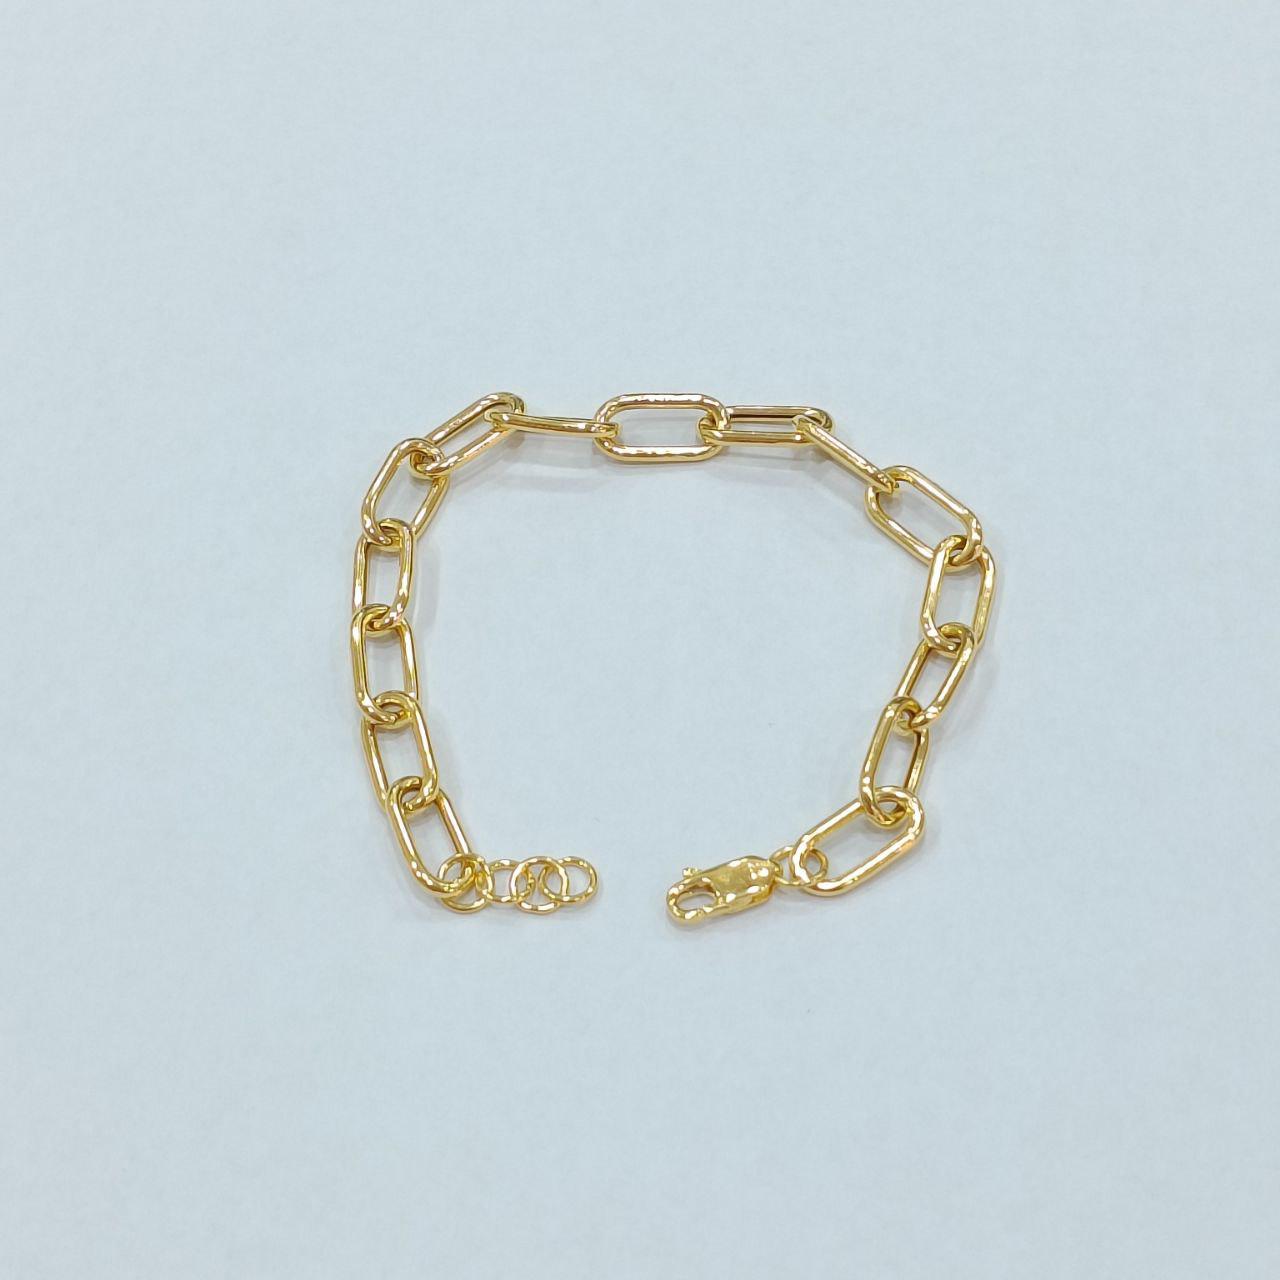 22k / 916 Gold Hollow Chain Link Bracelet (Light Weight)-916 gold-Best Gold Shop